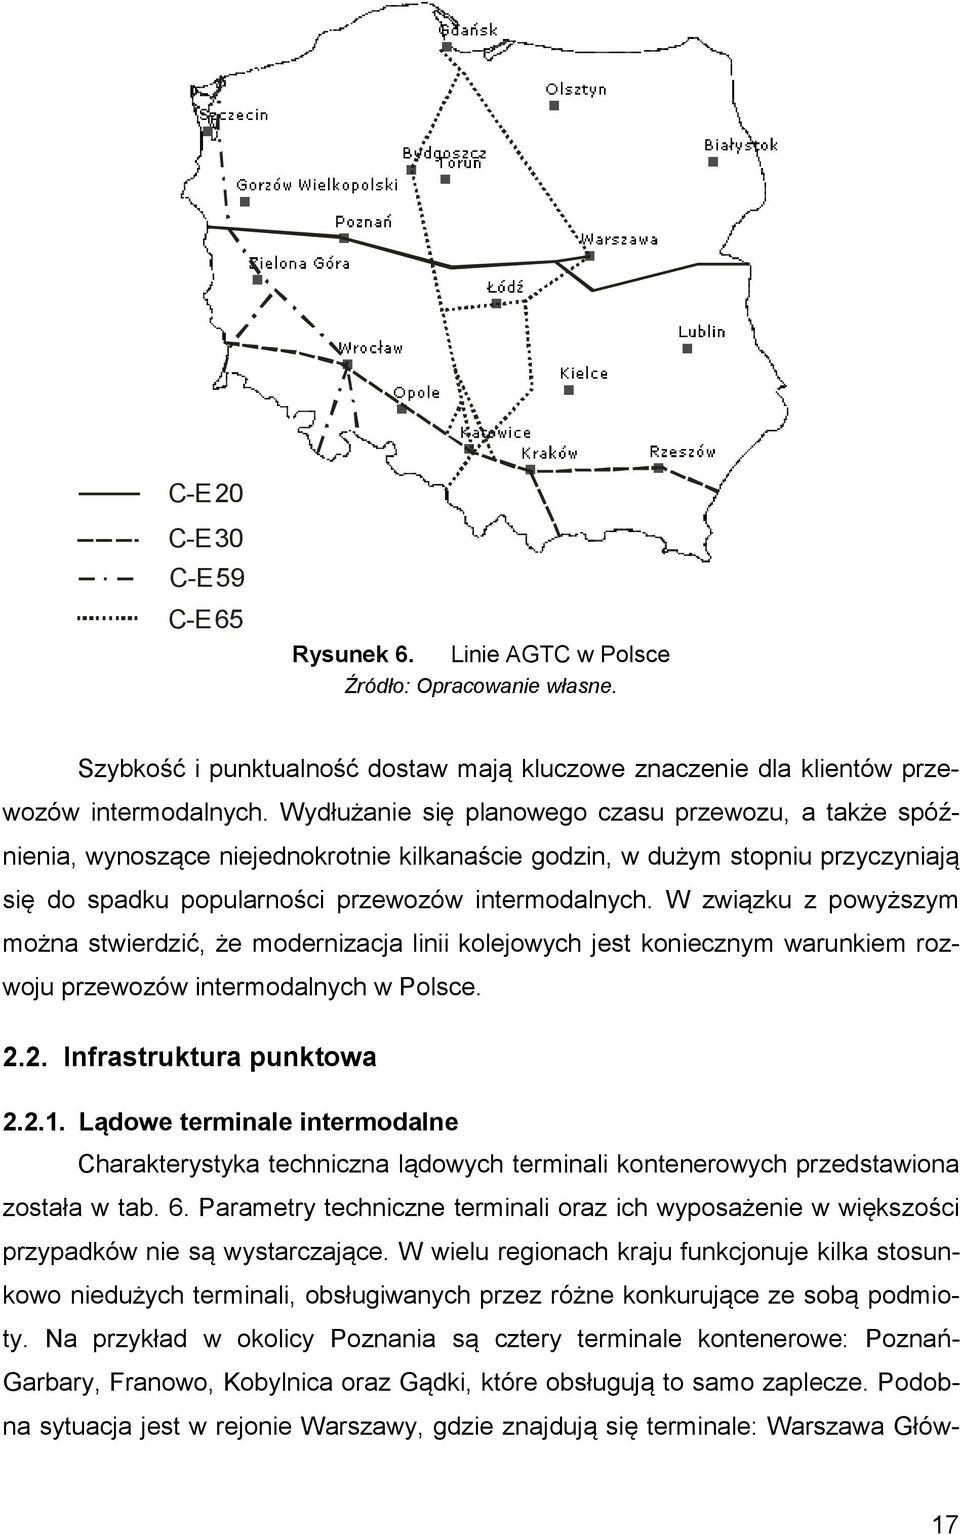 W związku z powyższym można stwierdzić, że modernizacja linii kolejowych jest koniecznym warunkiem rozwoju przewozów intermodalnych w Polsce. 2.2. Infrastruktura punktowa 2.2.1.